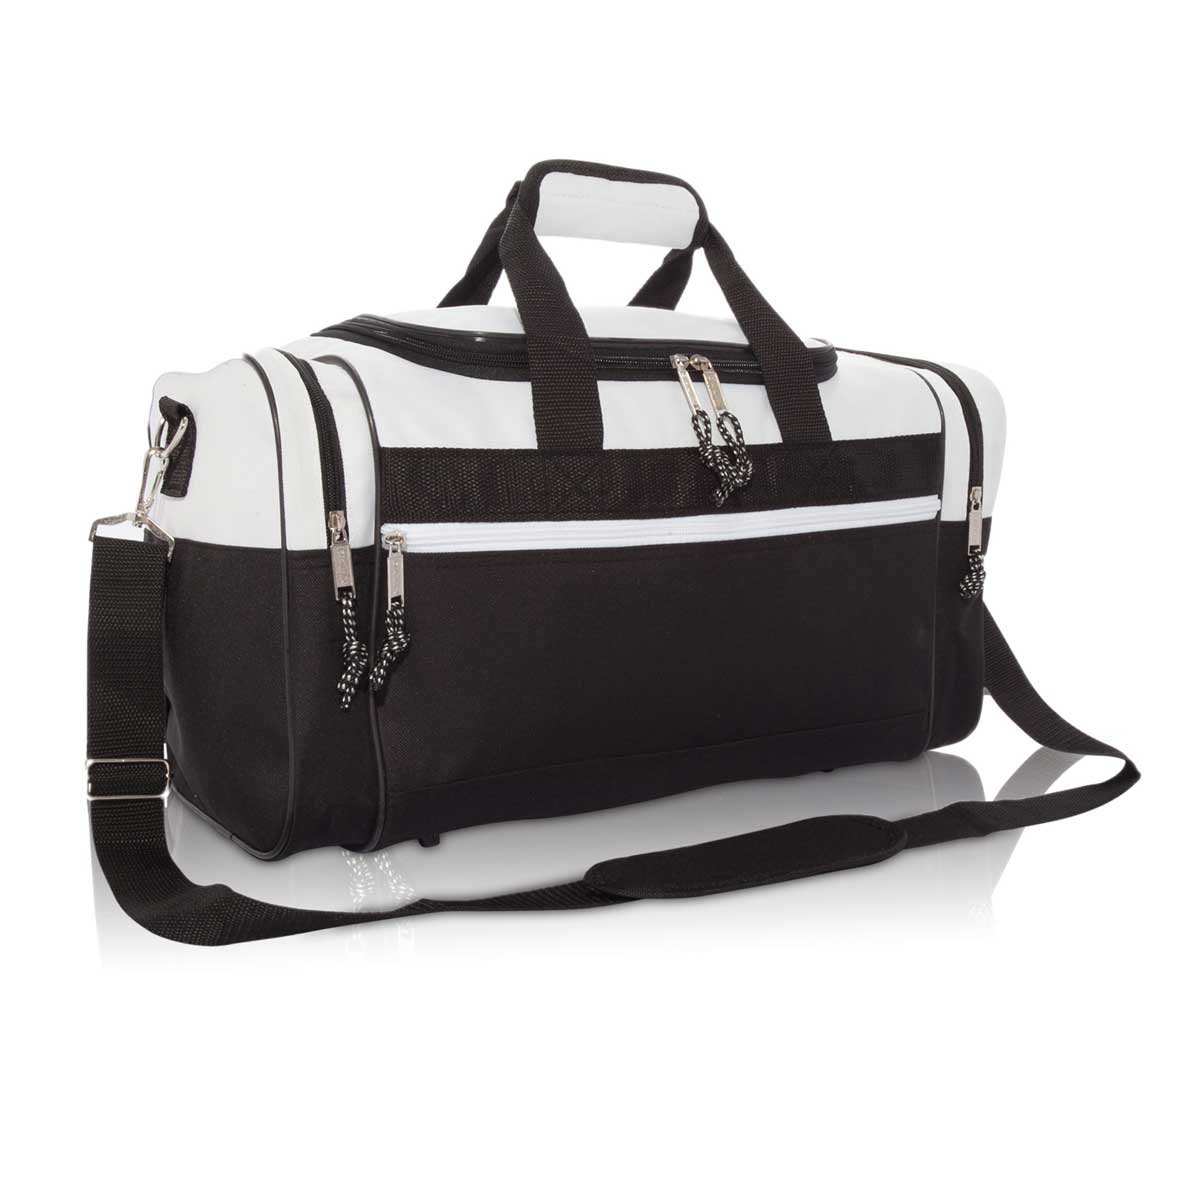 Dalix 17" Blank Duffel Bag Travel Size Sports Durable Gym Bag